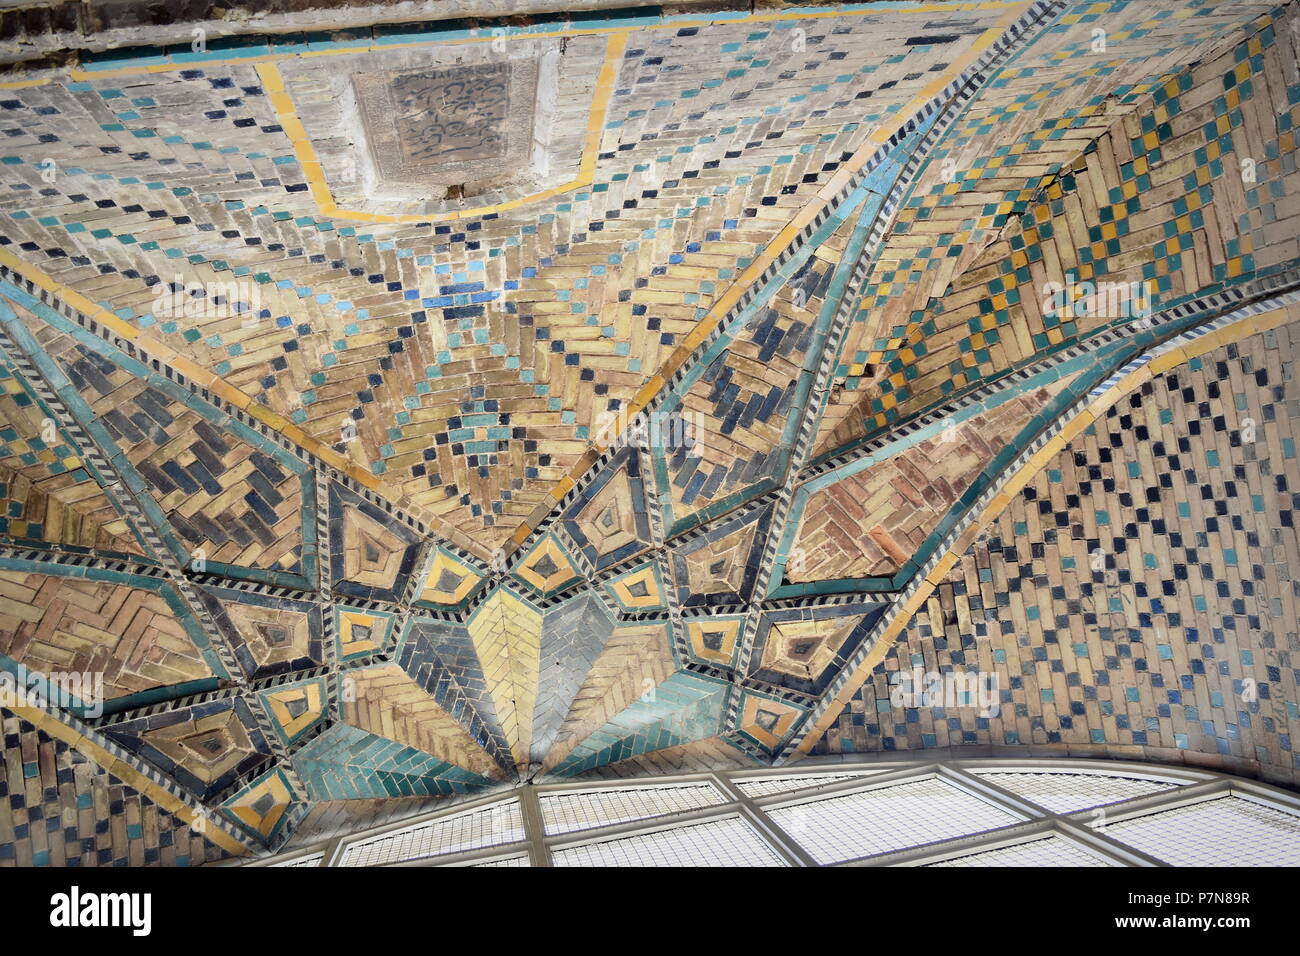 Bellissimi mosaici islamici e di arte islamica decorare il soffitto della storica Via della Seta serbatoio di acqua a Qazvin, Iran Foto Stock